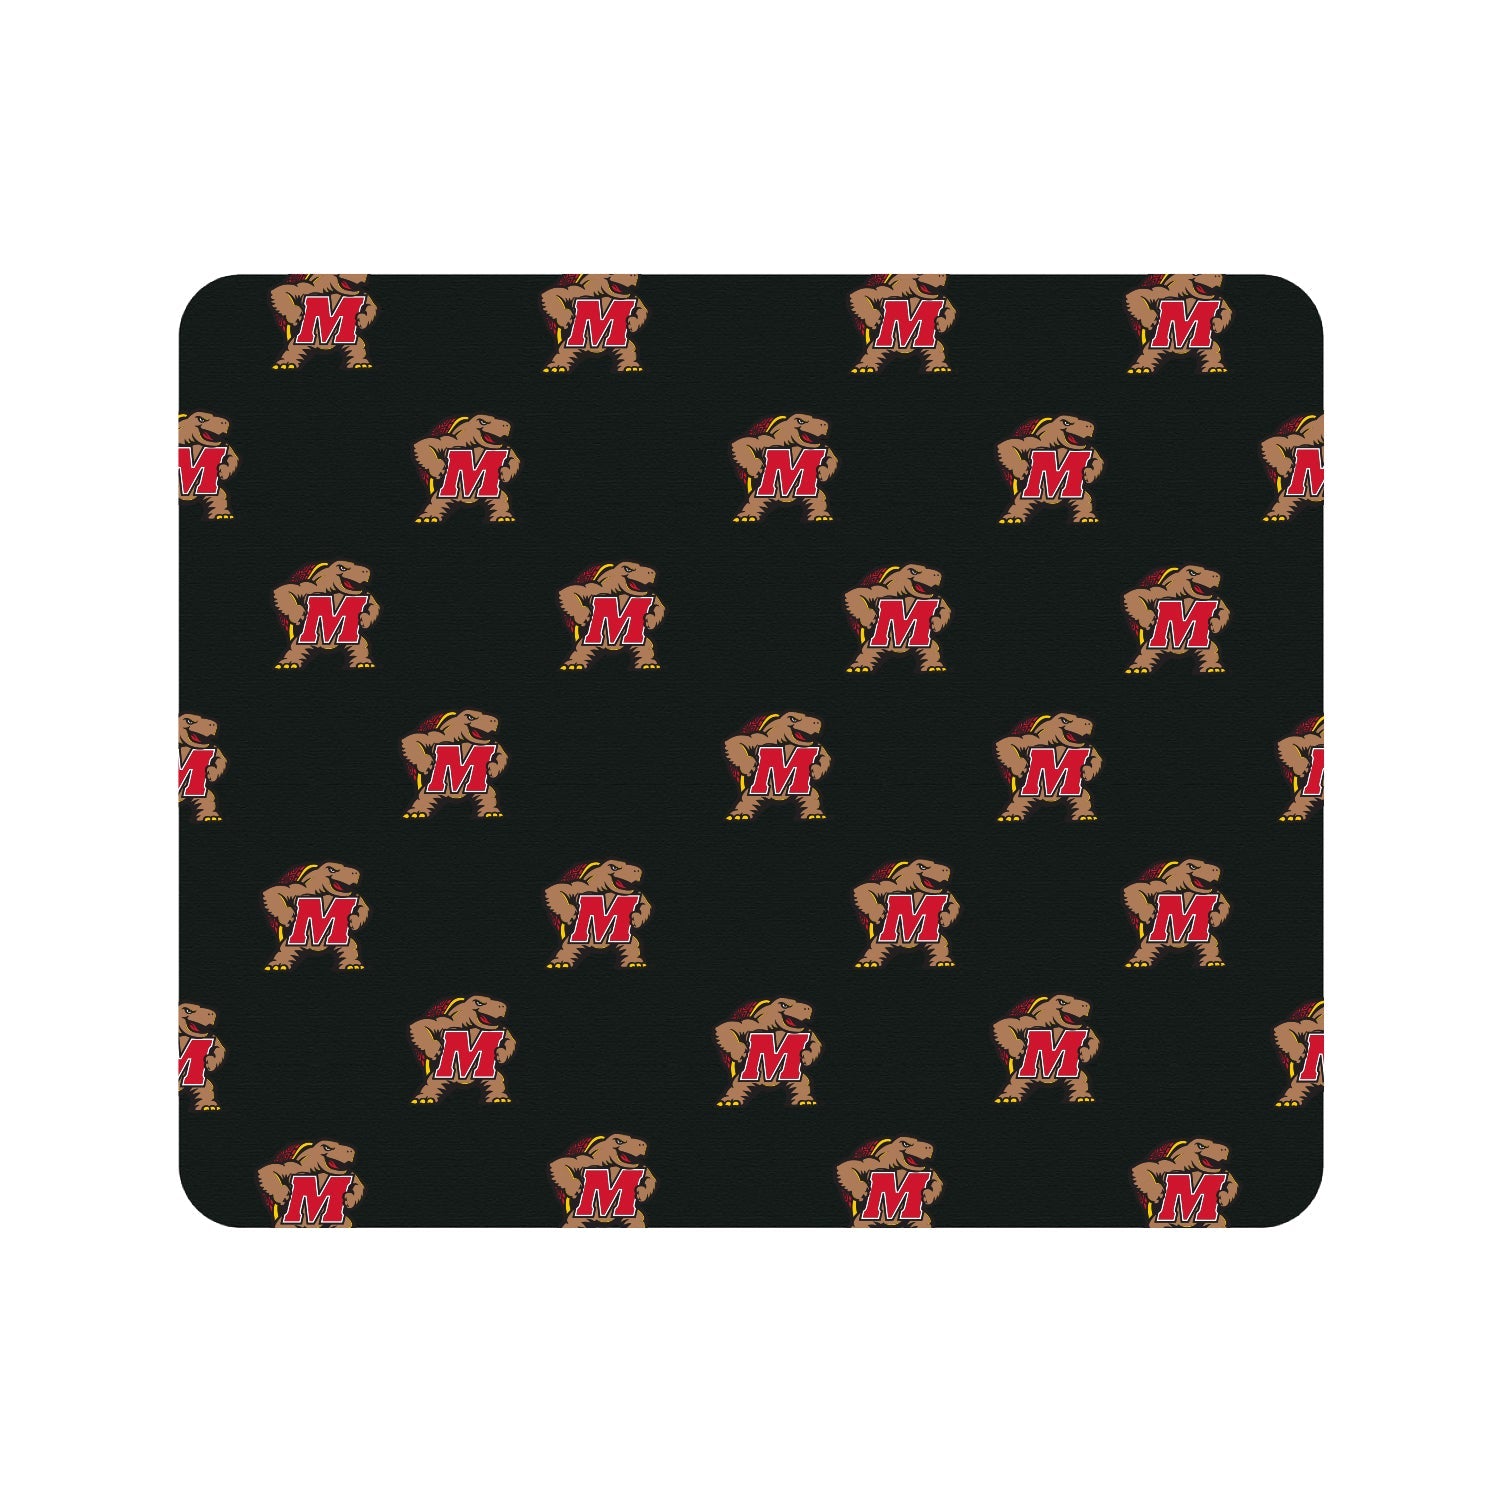 University of Maryland Black Mousepad, Mascot V1